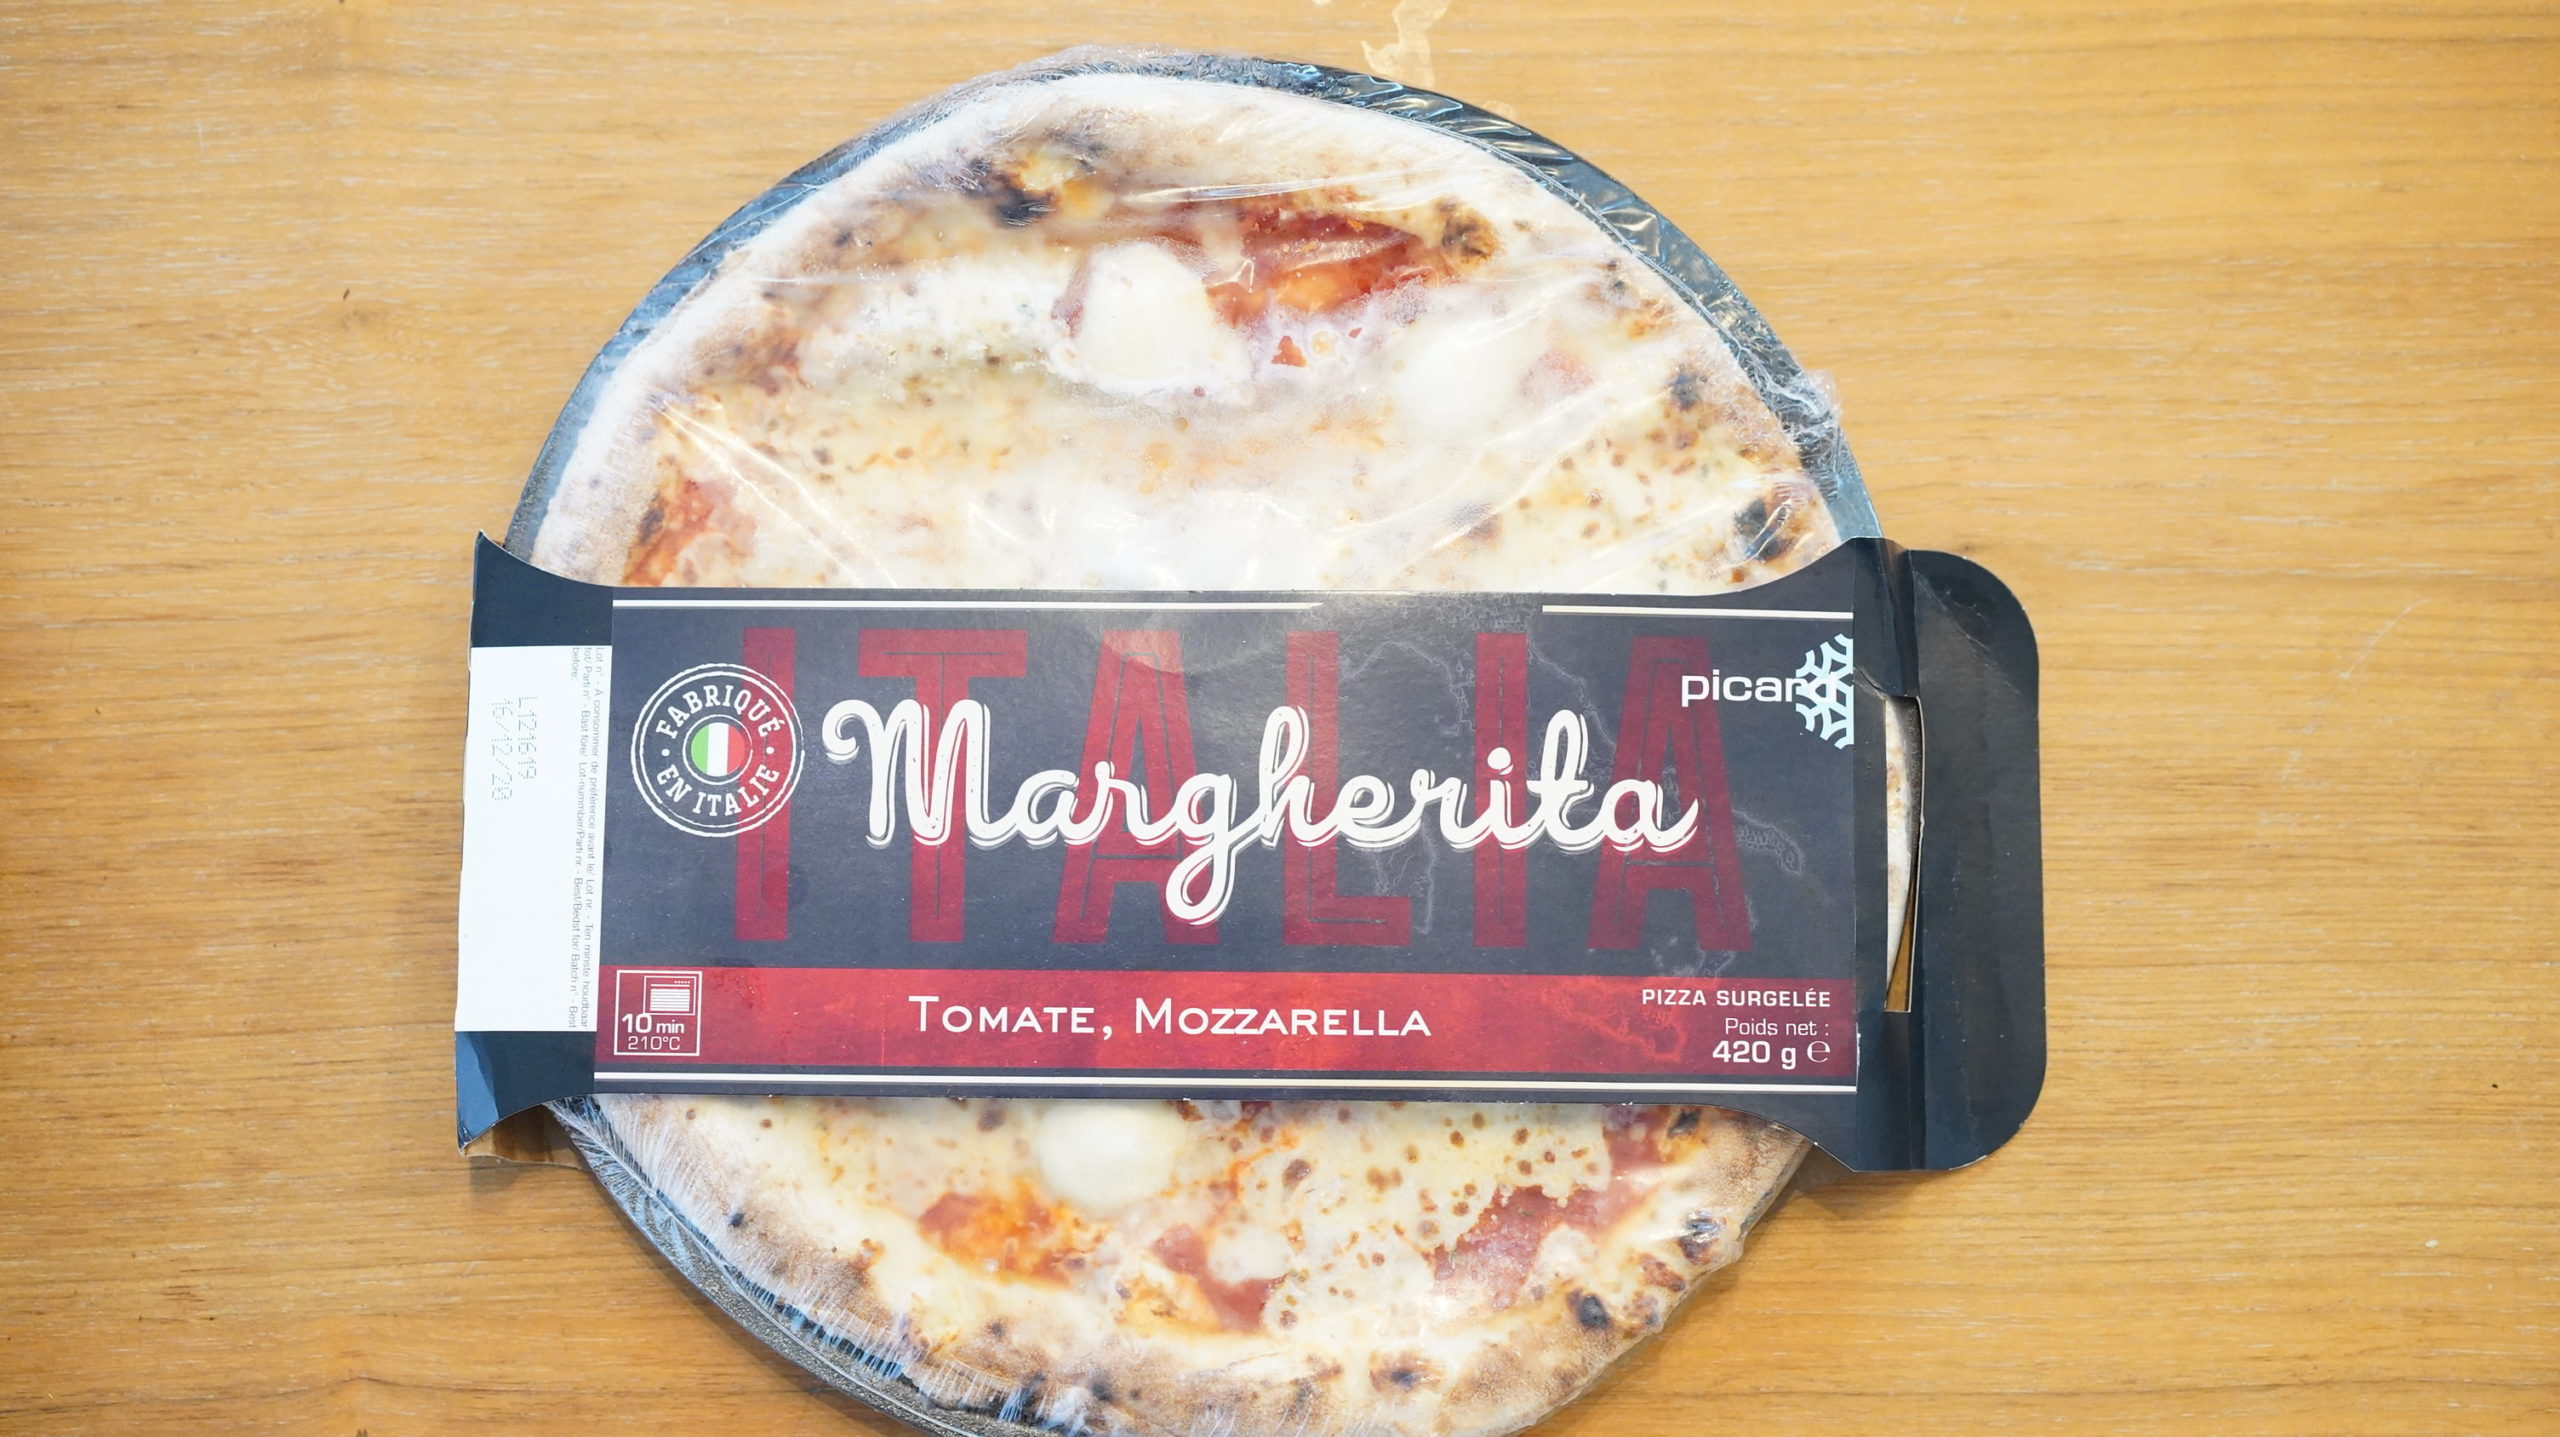 ピカールのおすすめ冷凍食品「ピッツァ・マルゲリータ」のパッケージ写真